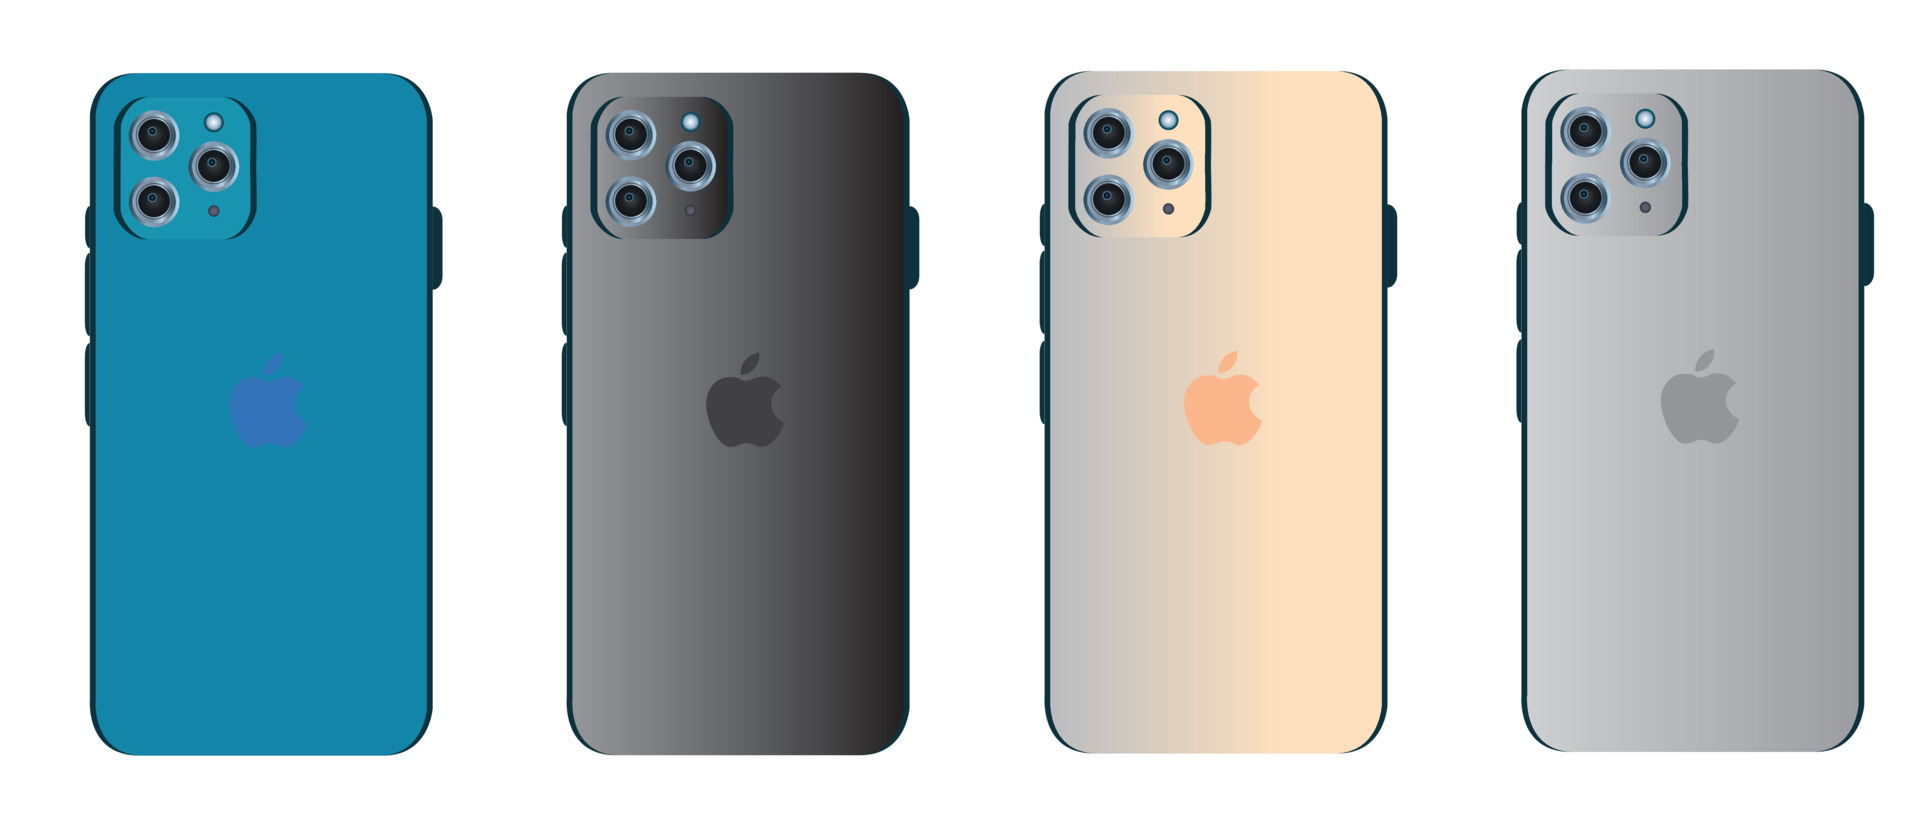 iPhone 13 Pro Đen (Graphite), Vàng (Gold), Bạc (Silver): iPhone 13 Pro mang đến một tinh thần mới cho người dùng với nhiều lựa chọn màu sắc như Graphite, Vàng và Bạc. Cùng xem hình ảnh về iPhone 13 Pro để khám phá những tính năng tuyệt vời mà chiếc điện thoại này mang lại.